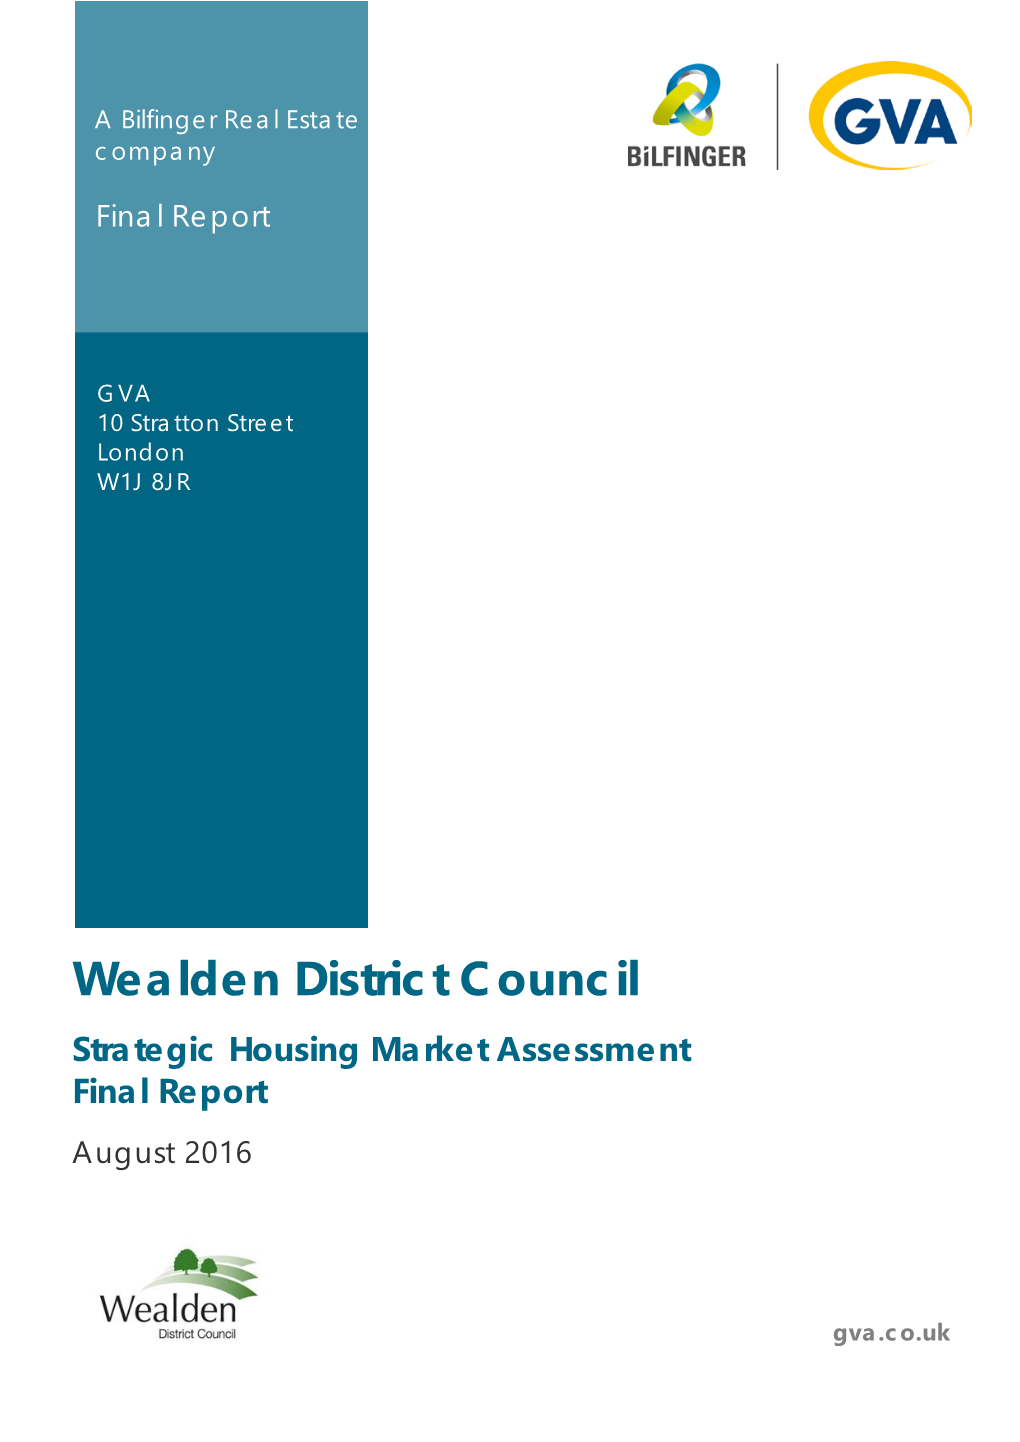 Wealden District Council Strategic Housing Market Assessment Final Report